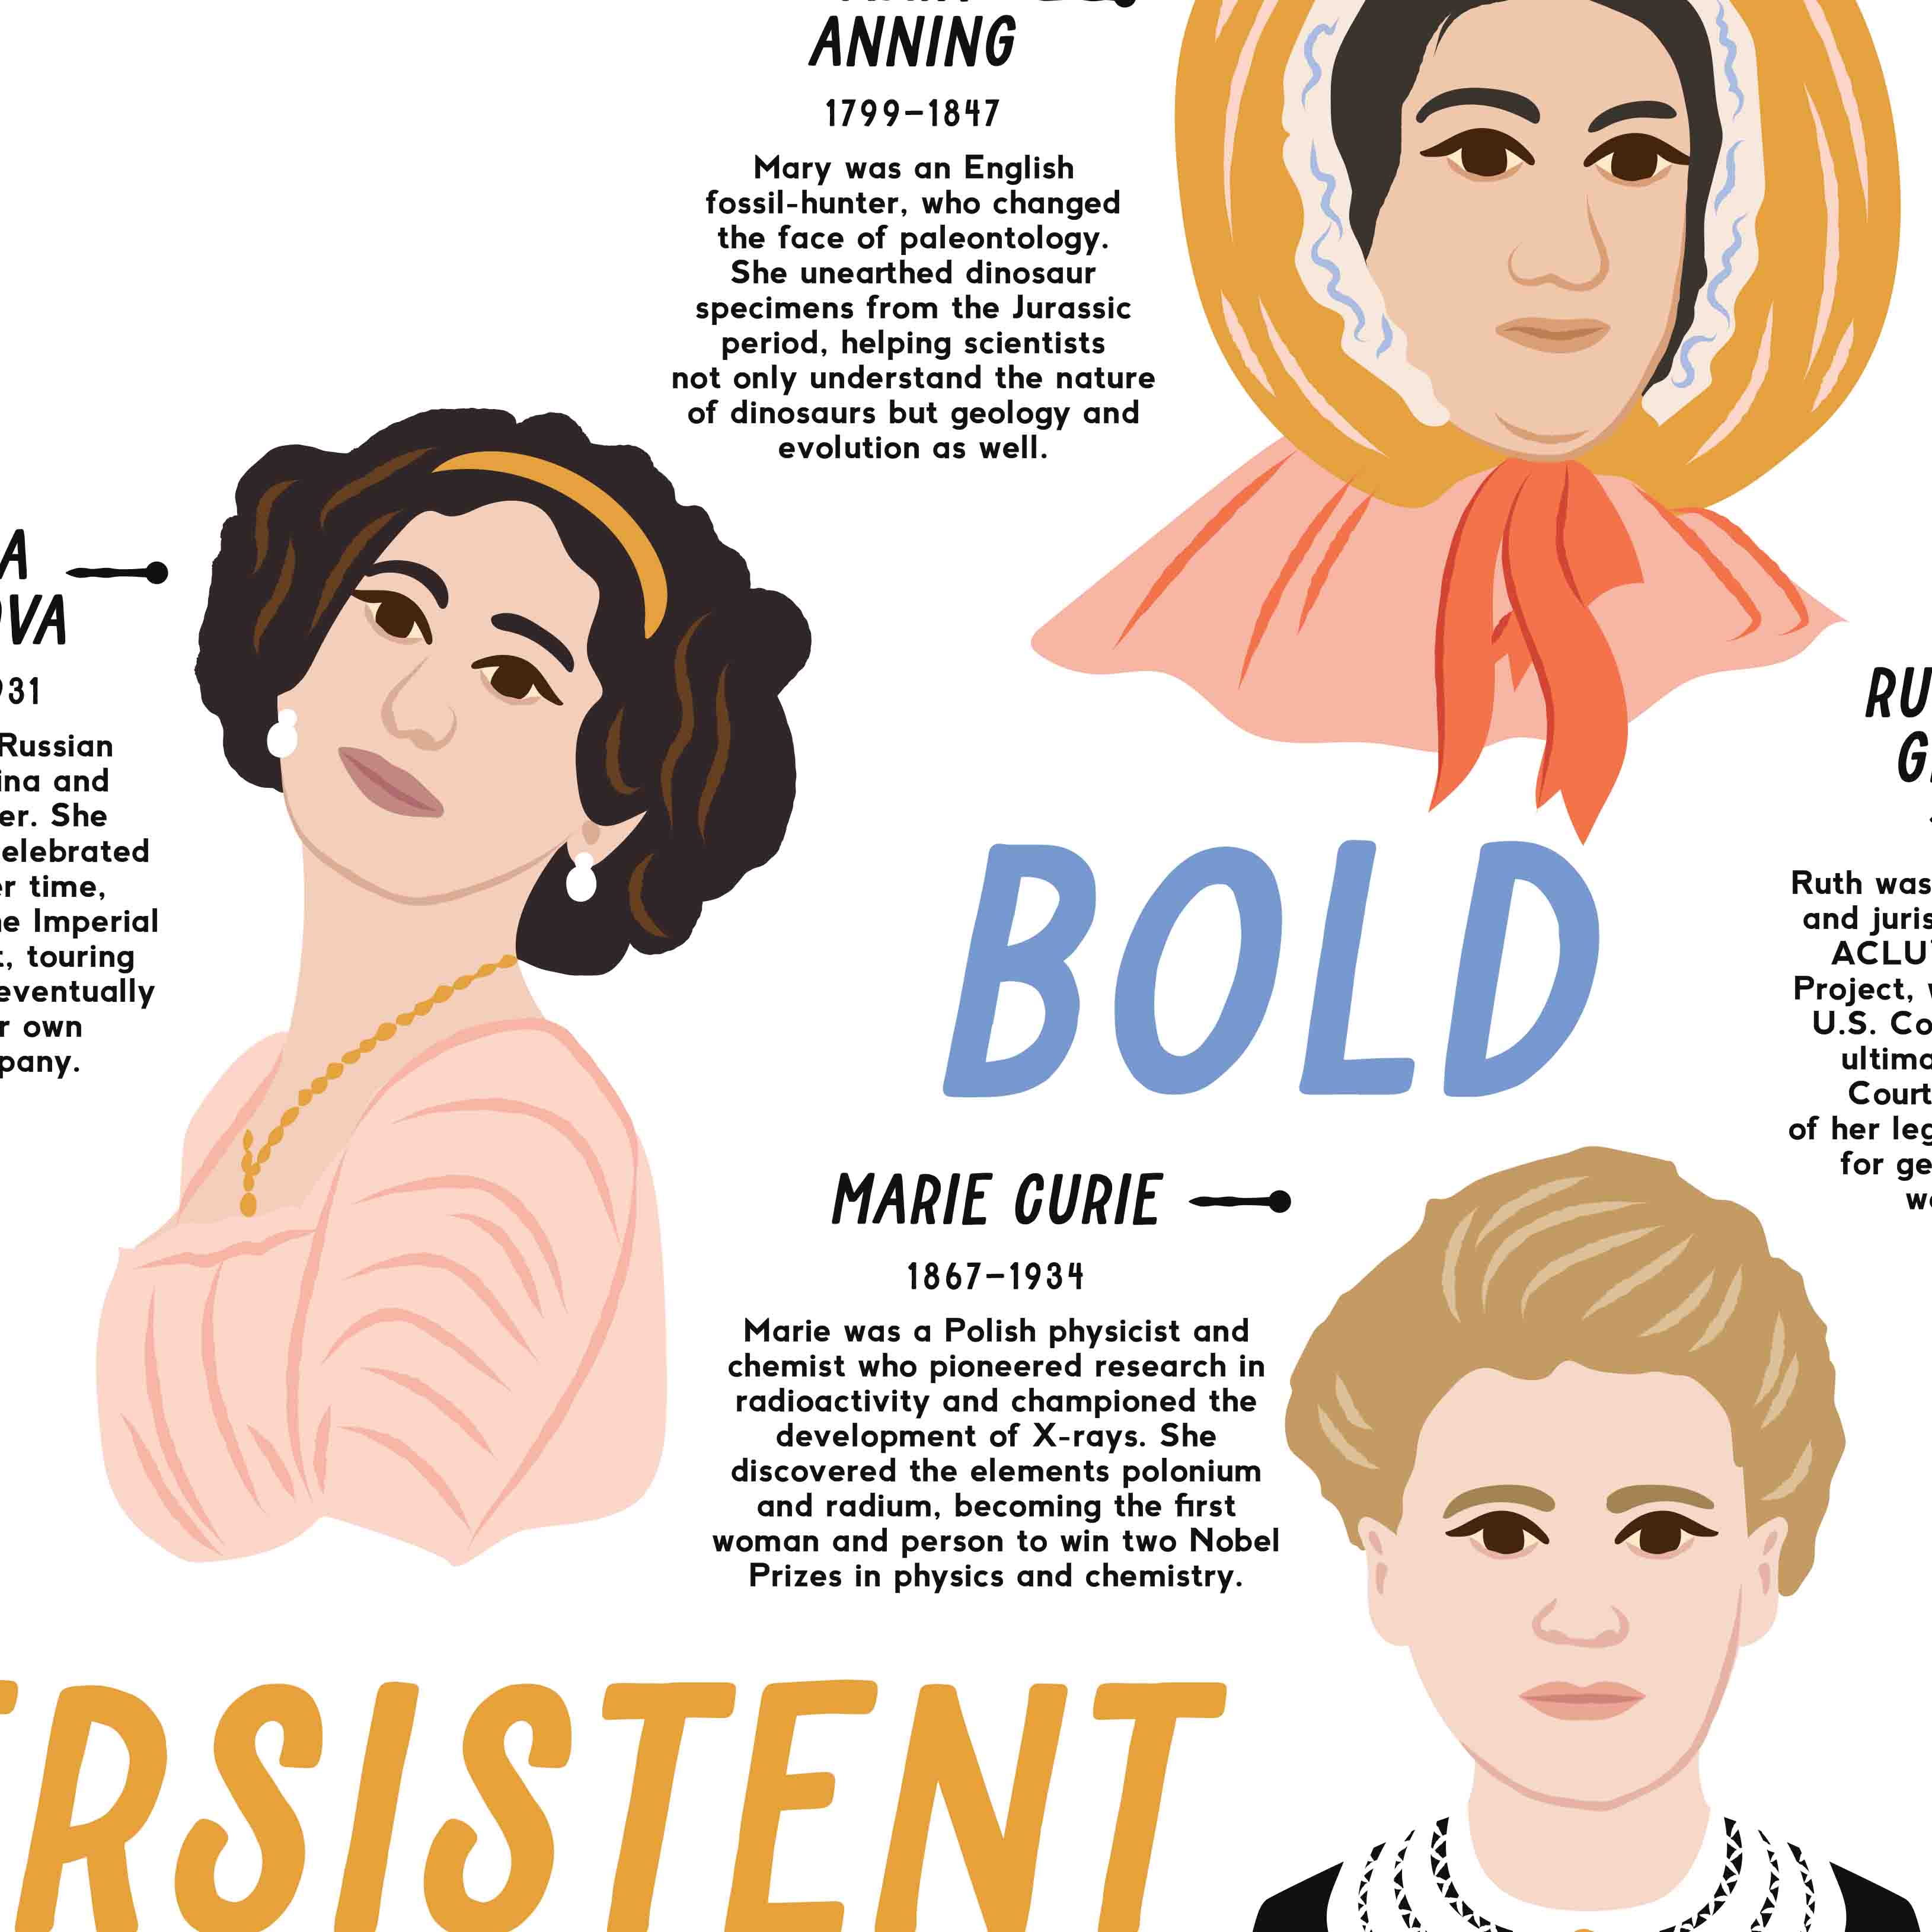 Girl Power: 5 Powerful Women in History